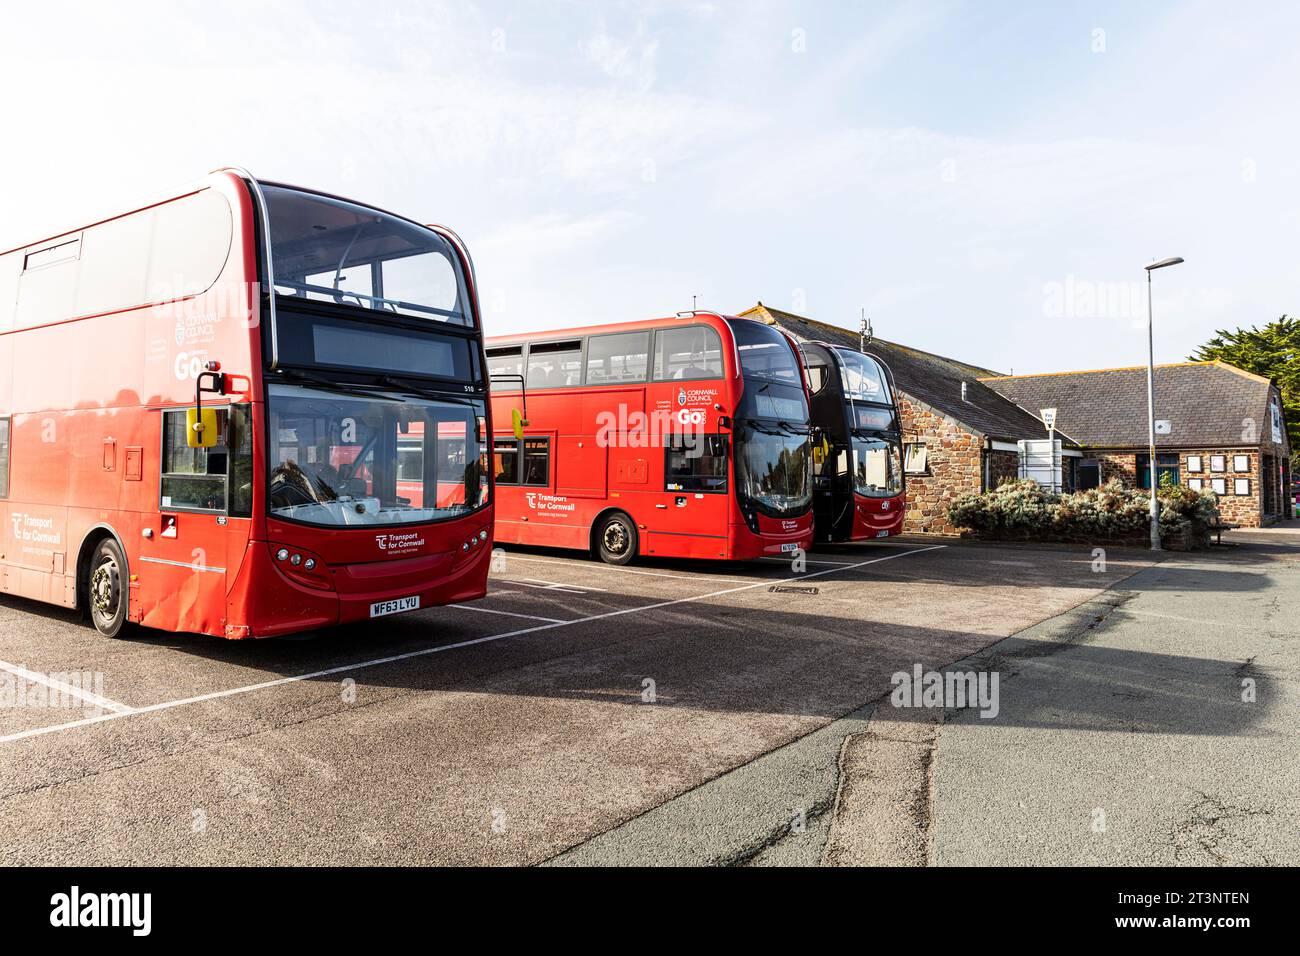 Tre autobus, Bude, Cornovaglia, Regno Unito, Inghilterra, 3 autobus, 3 autobus rossi, tre autobus rossi, trasporti per autobus della Cornovaglia, autobus rosso, non in autobus di servizio, Foto Stock